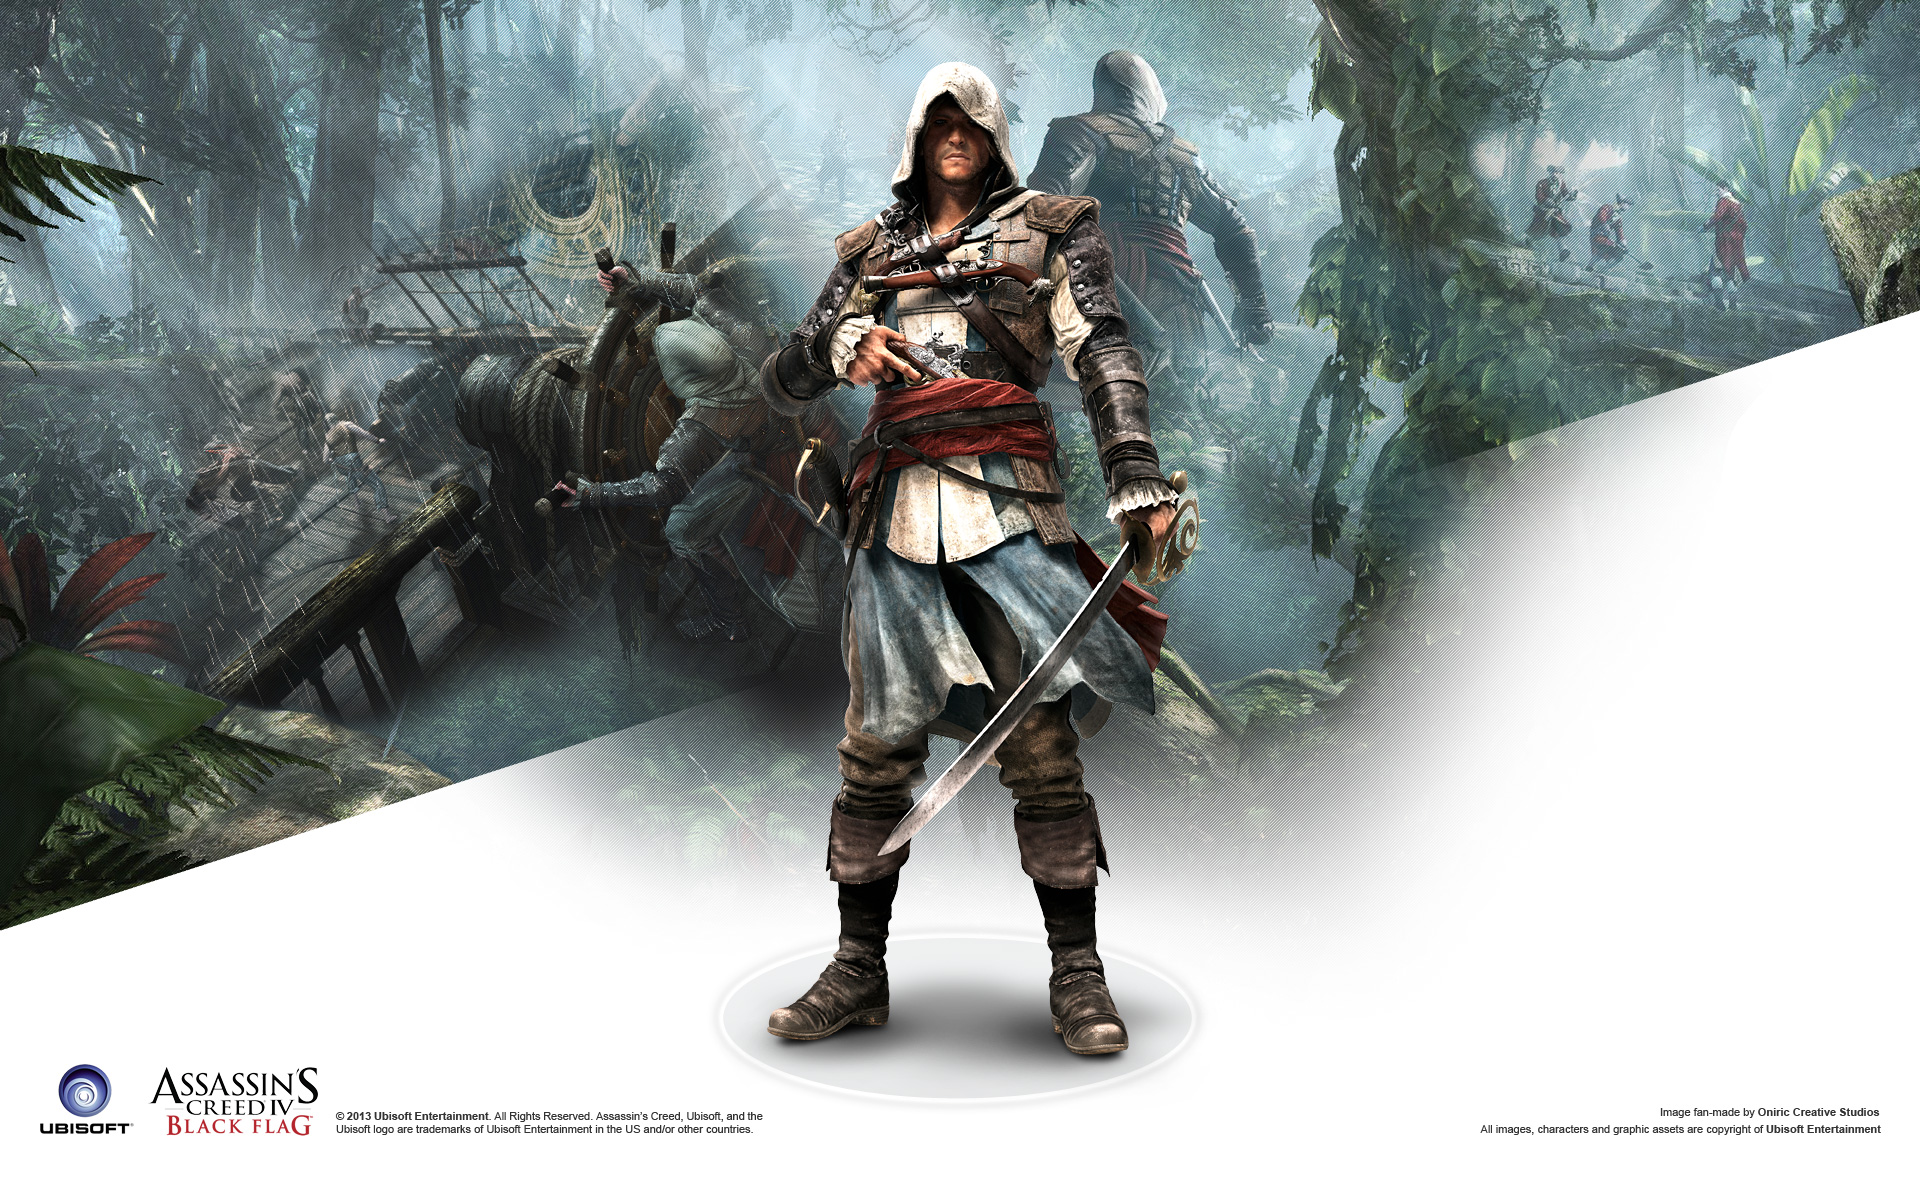 Assassins Creed 4 Black Flag Wallpaper by Slydog0905 on DeviantArt